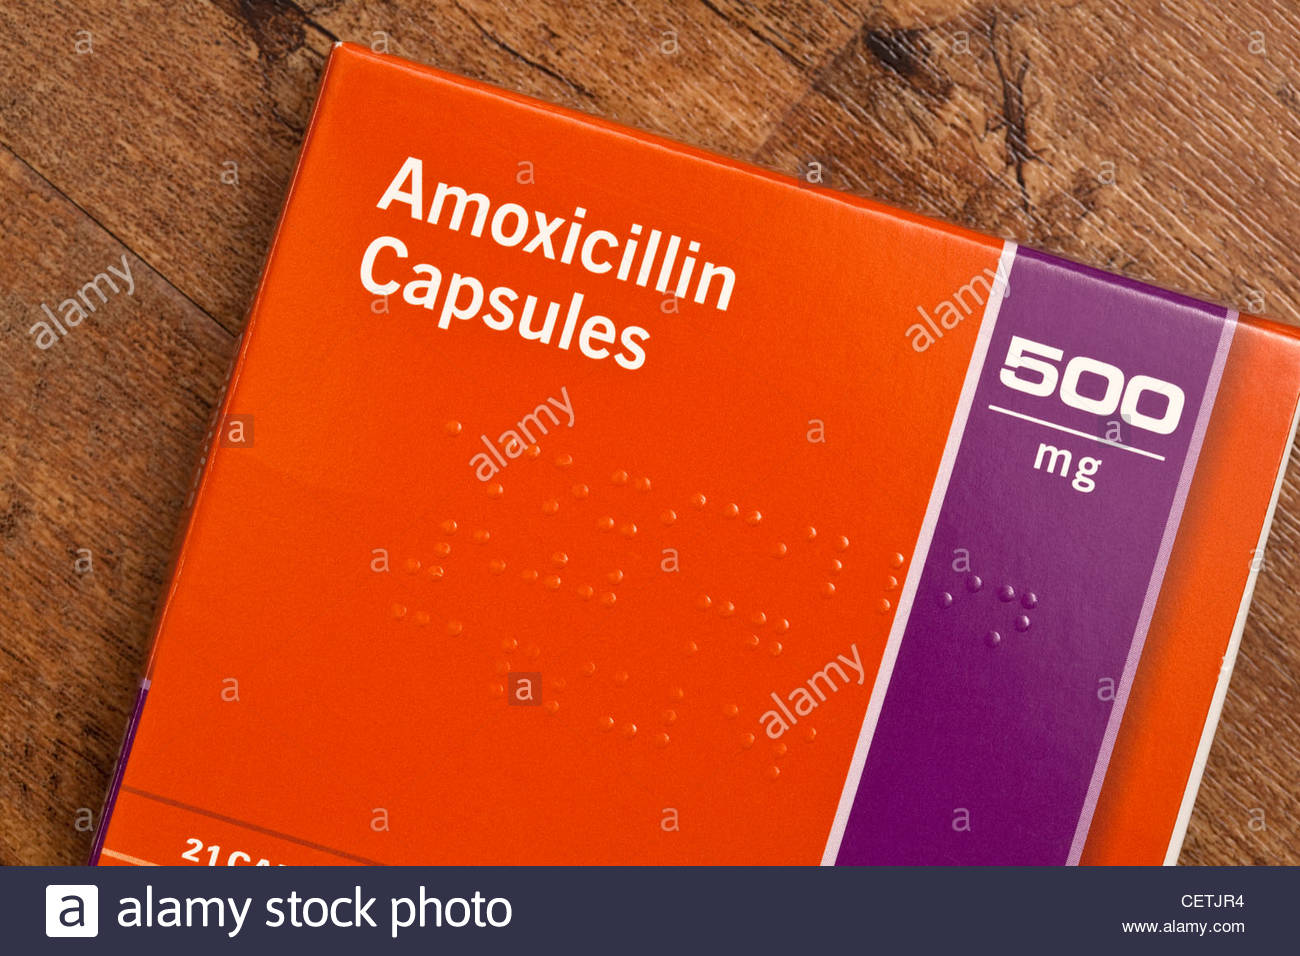 asthalin tablet uses in telugu